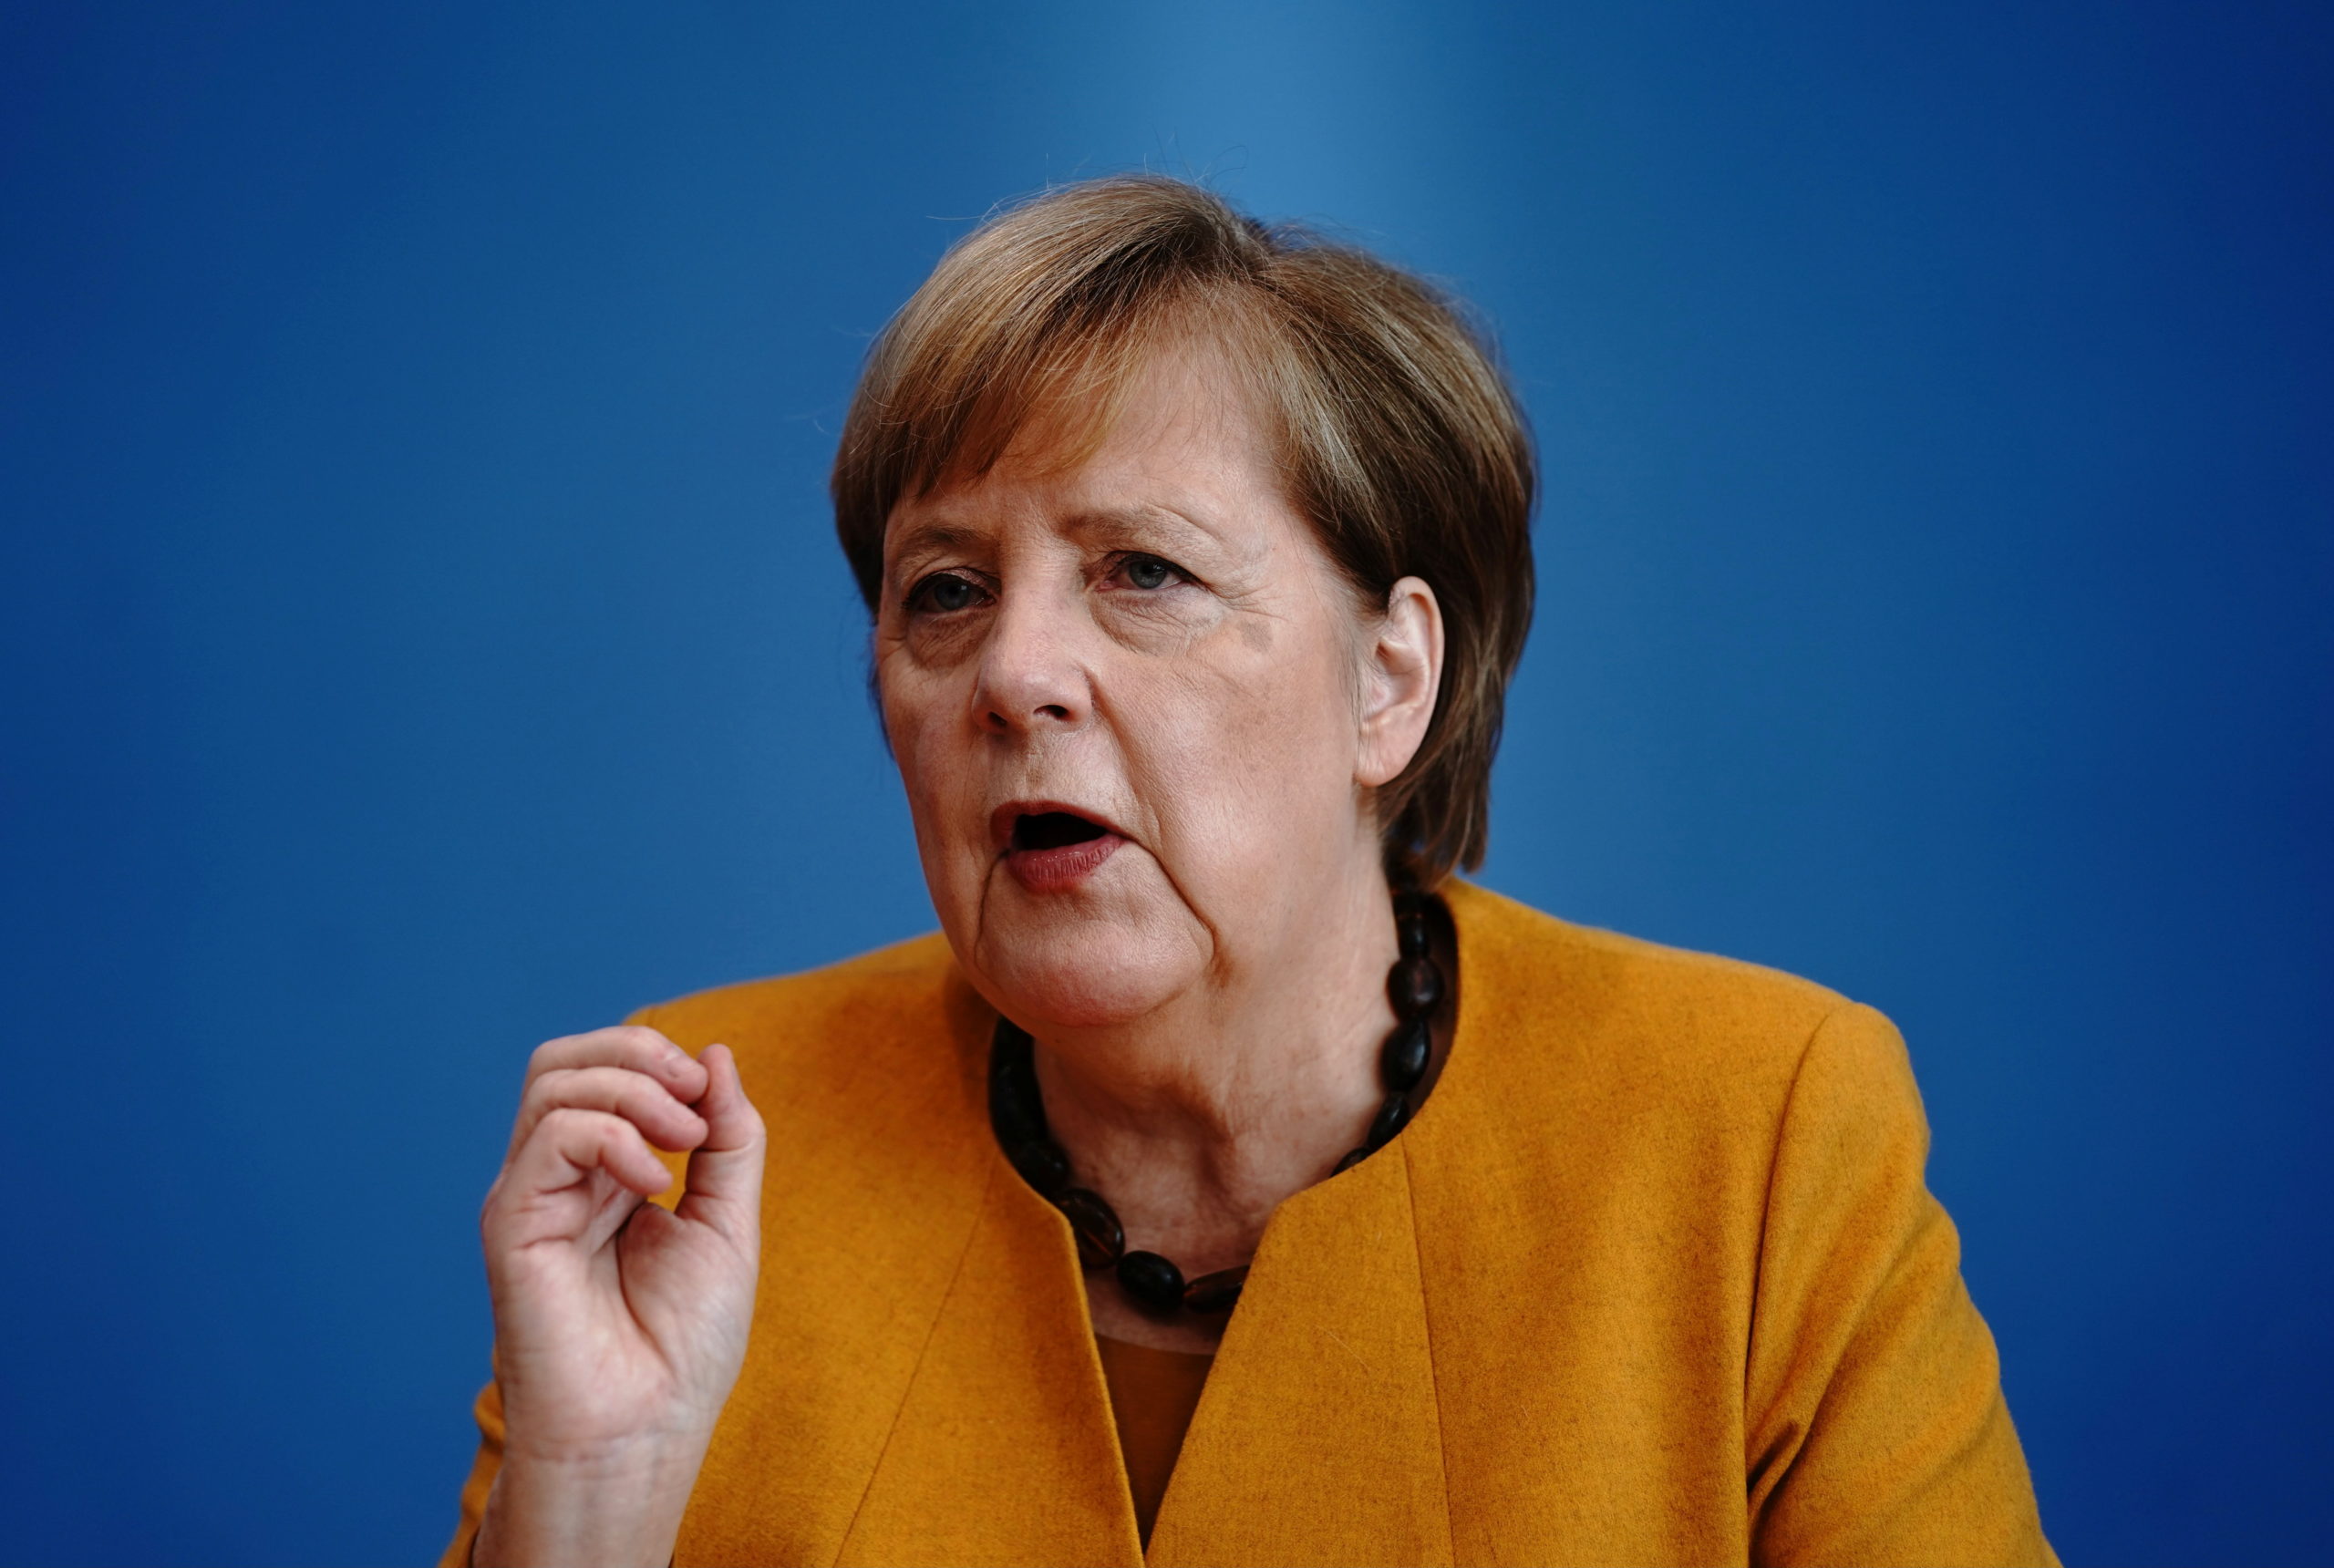 L'Allemagne entre à son tour en reconfinement partiel, Merkel en appelle à la responsabilité de tous